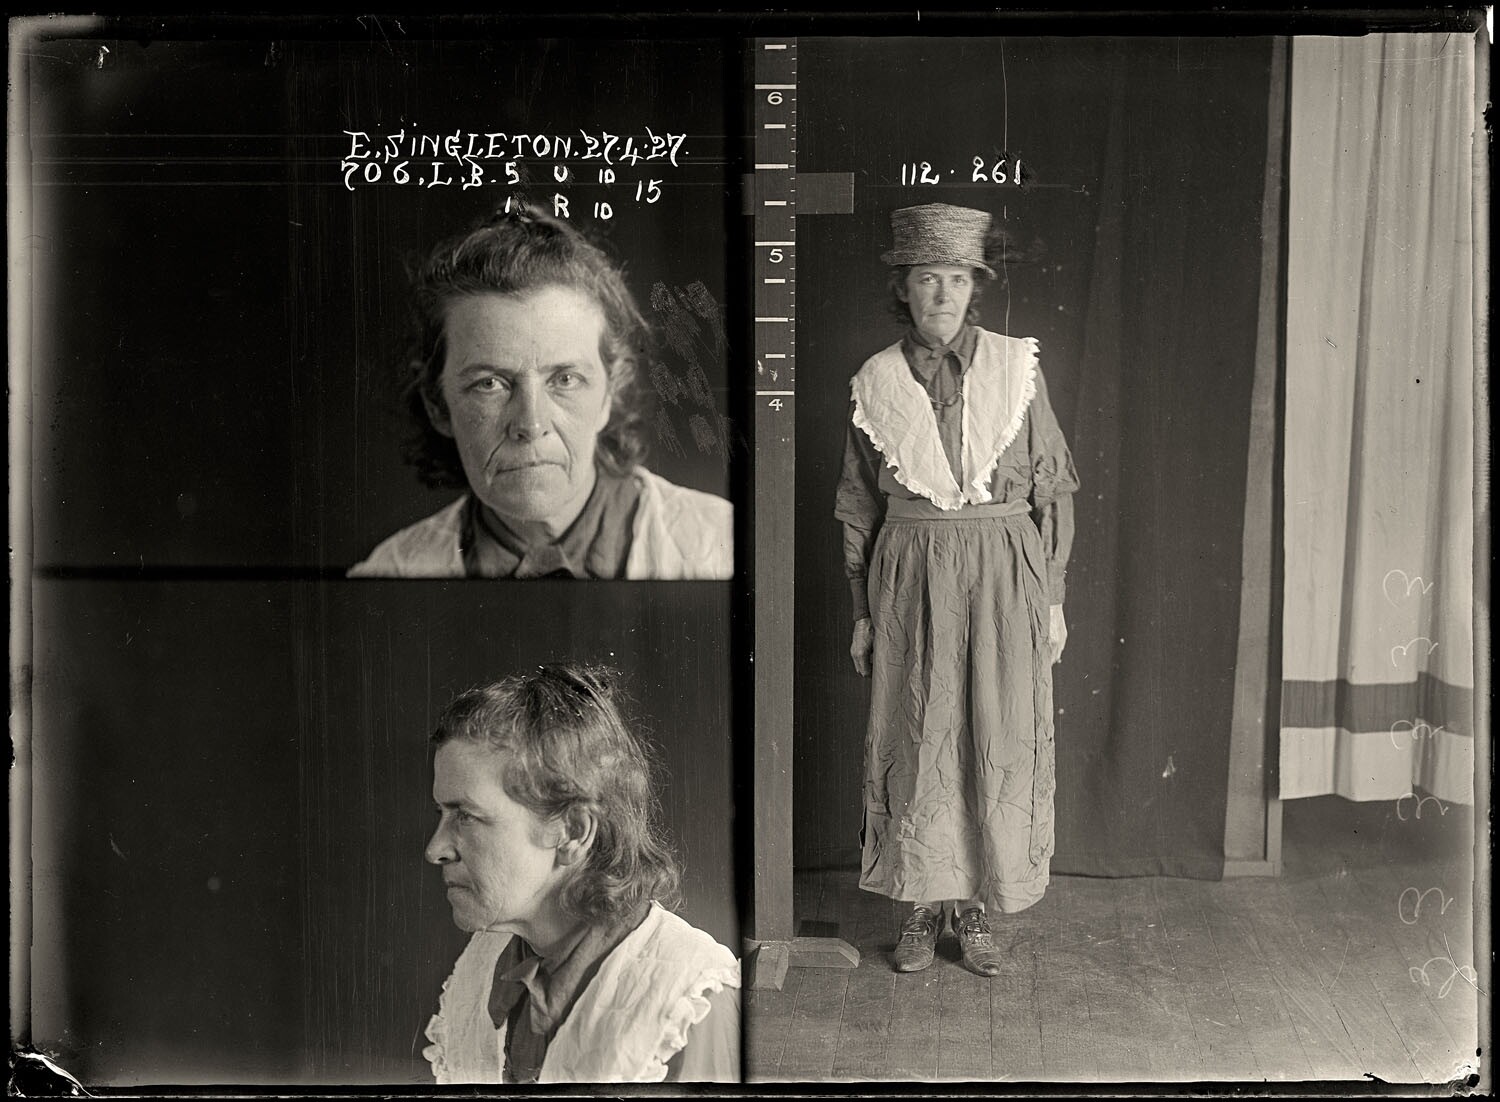 Элизабет Синглтон, имела судимости за приставание к мужчинам и была описана в полицейских протоколах как обычная проститутка, 9 июля 1905 года. Архив судебной фотографии полиции Нового Южного Уэльса